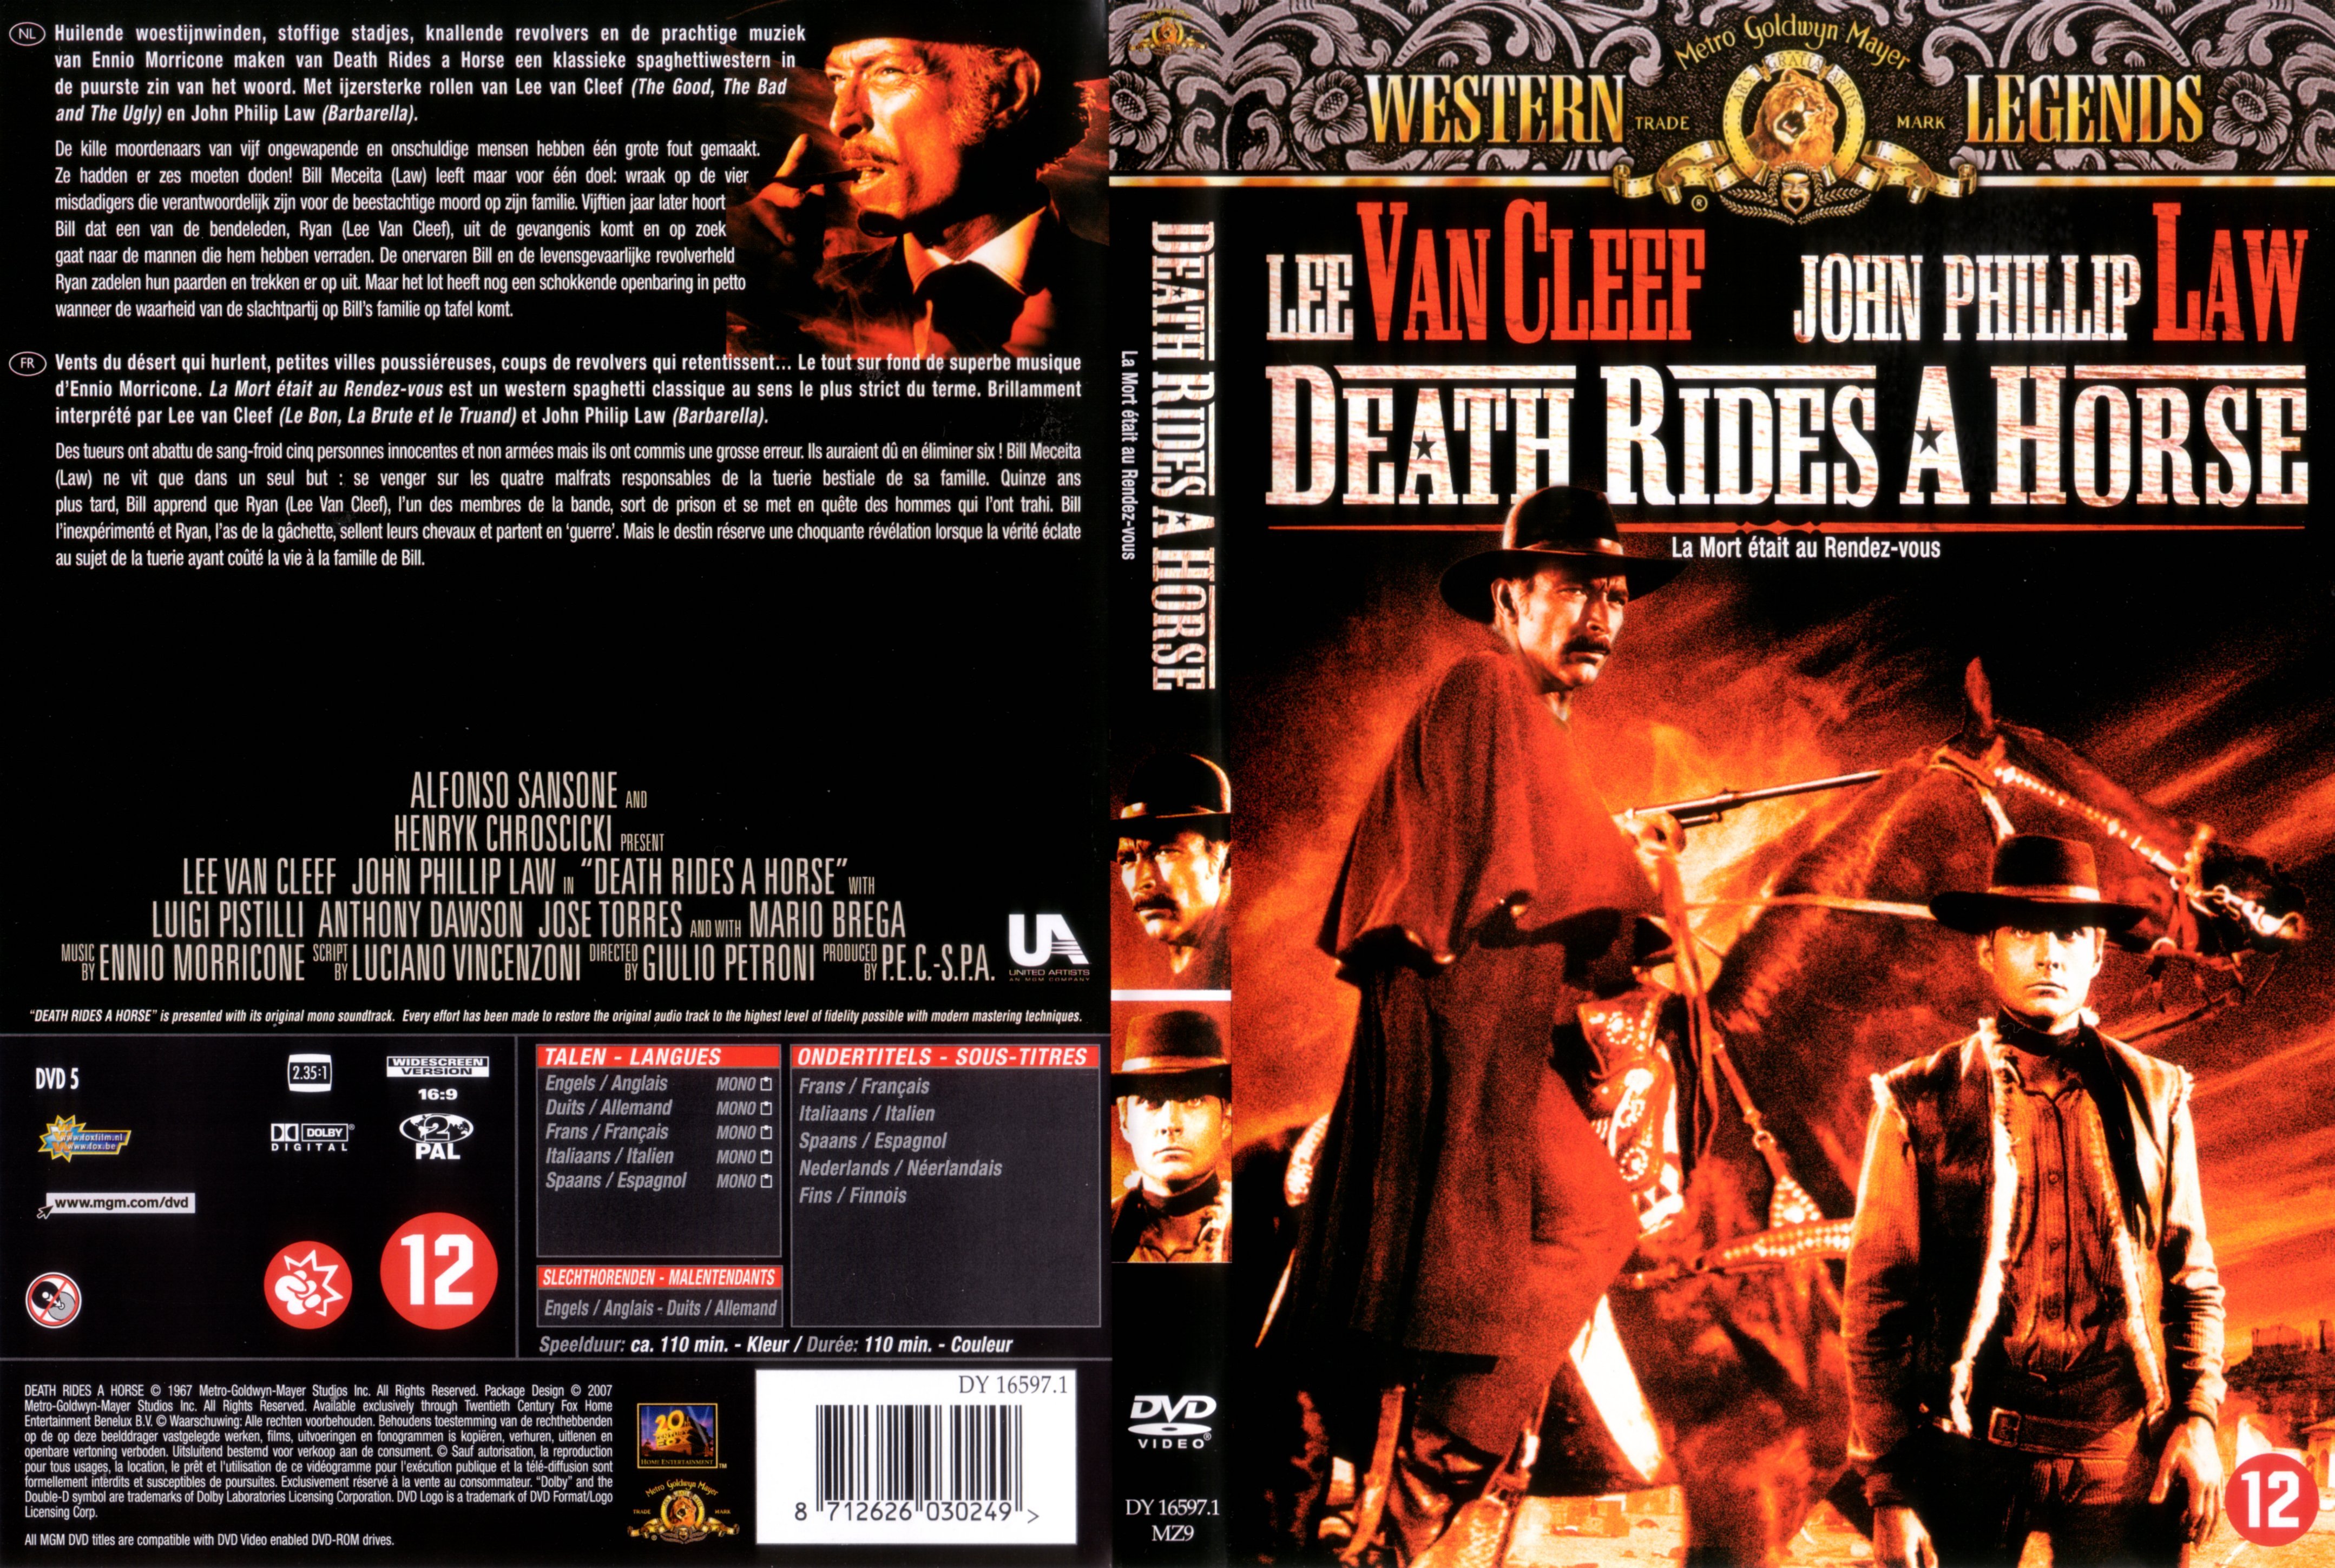 Jaquette DVD Death rides a horse - La mort tait au rendez-vous